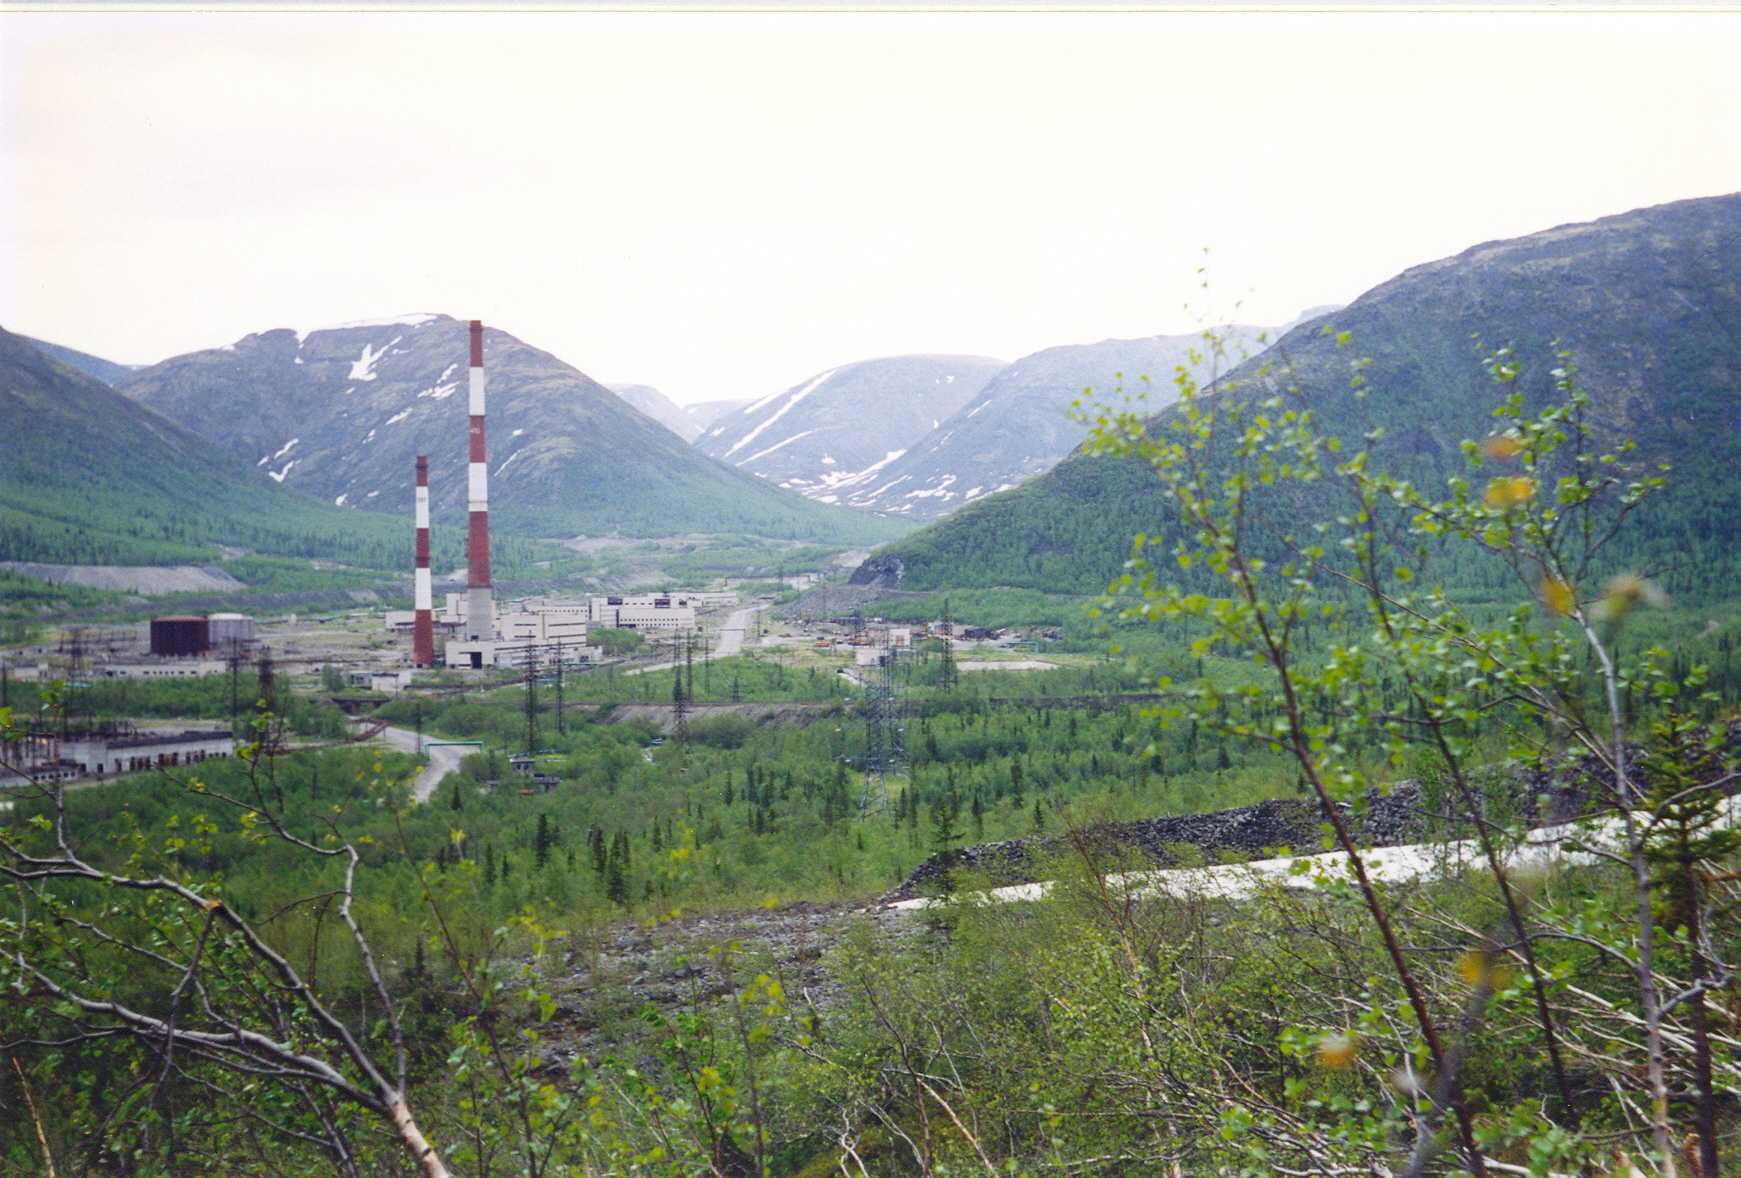  Вид на заброшенную ТЭЦ с подножия горы Юкспорр Июнь 1999 года 